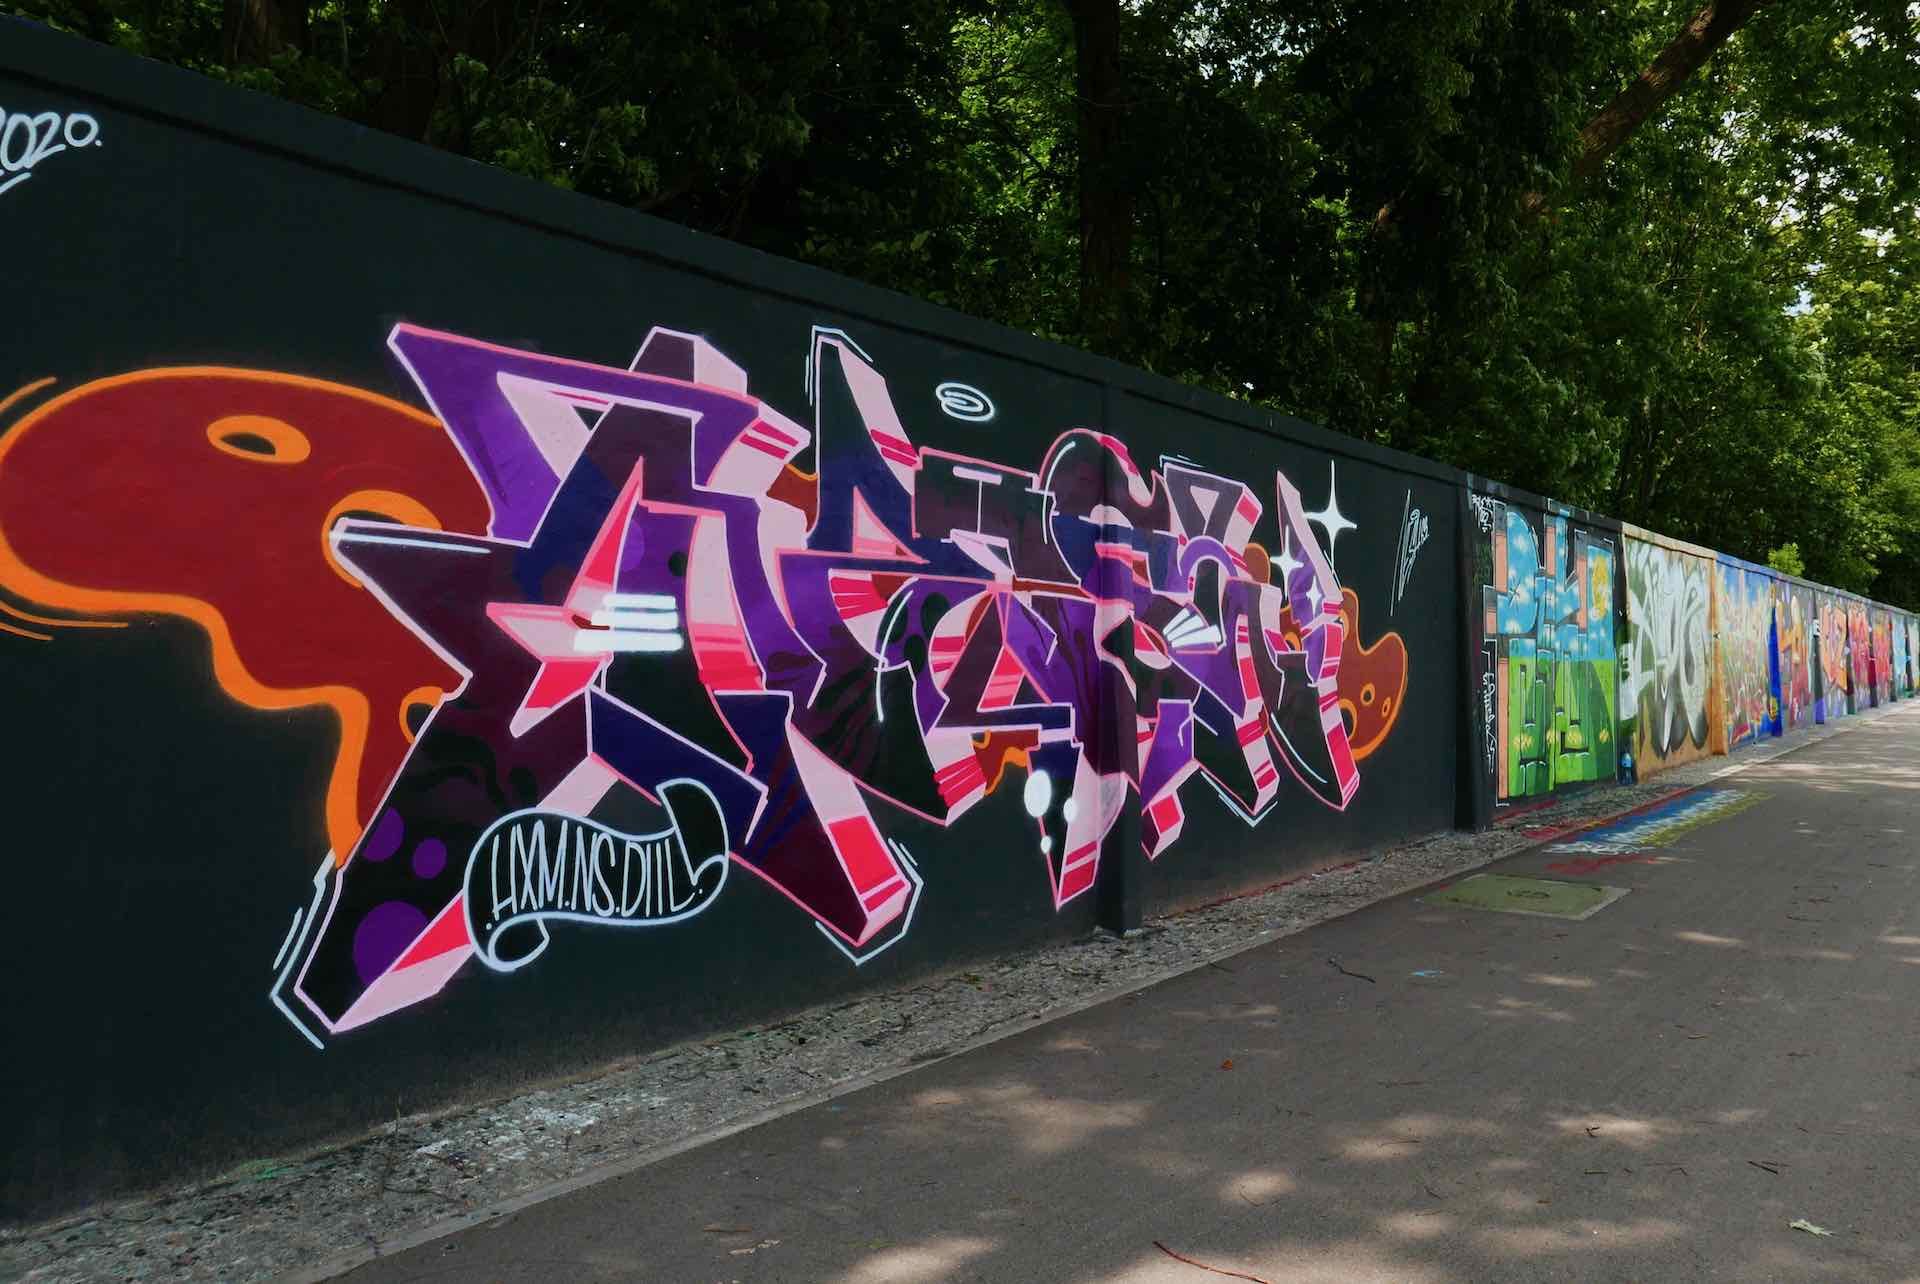 Street art in Warsaw